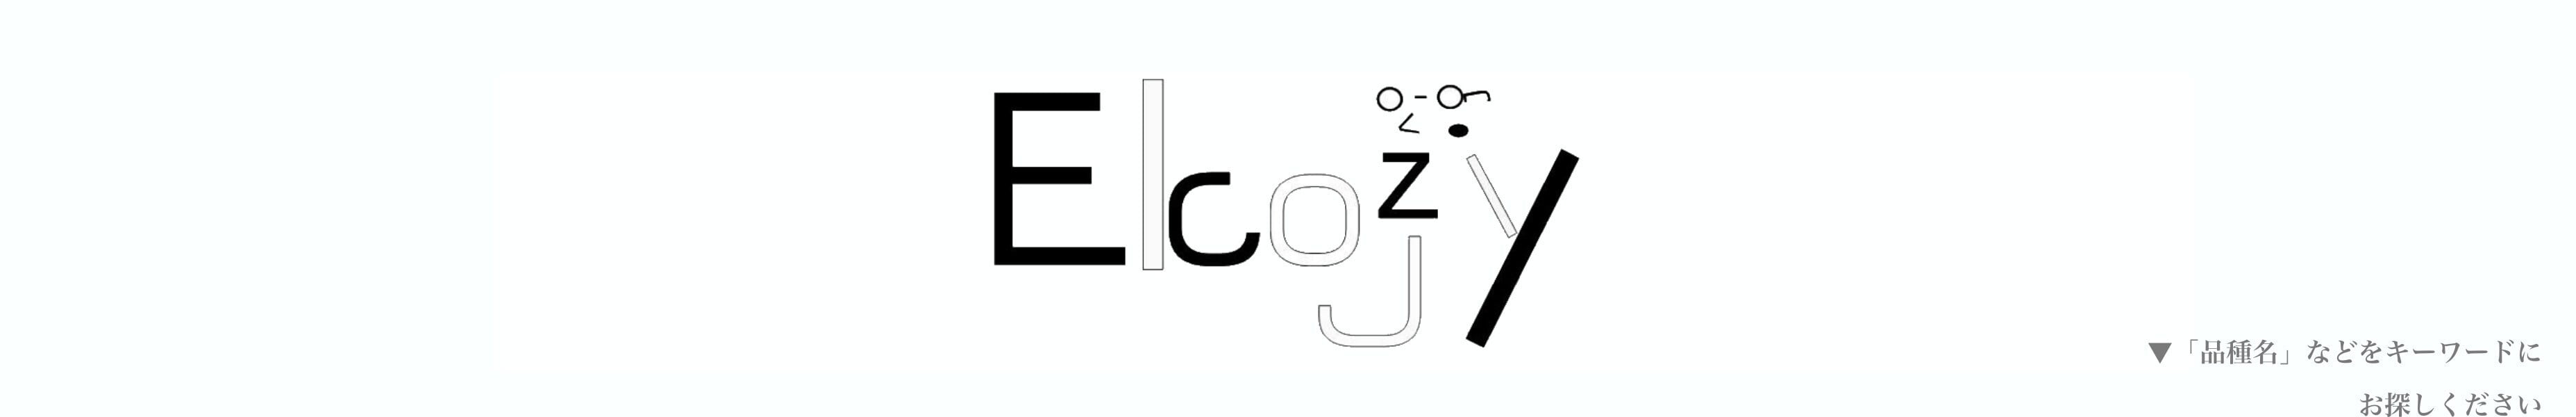 Ecozy(エコーズィー)